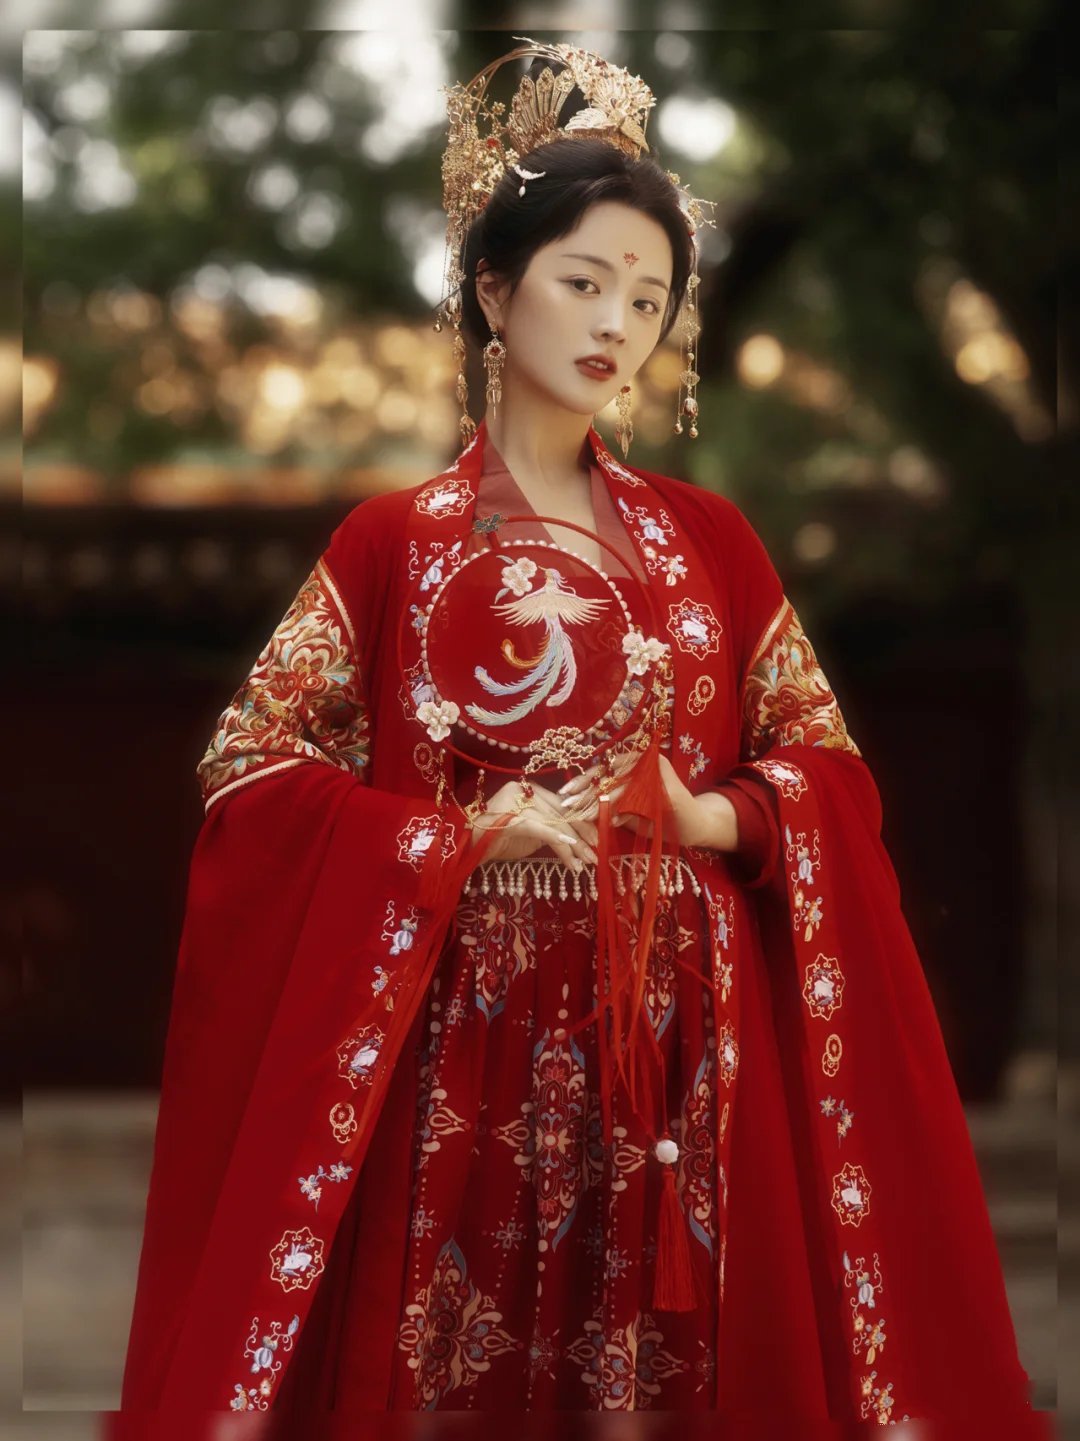 唯美飘逸的古典中国红汉服美女写真图片